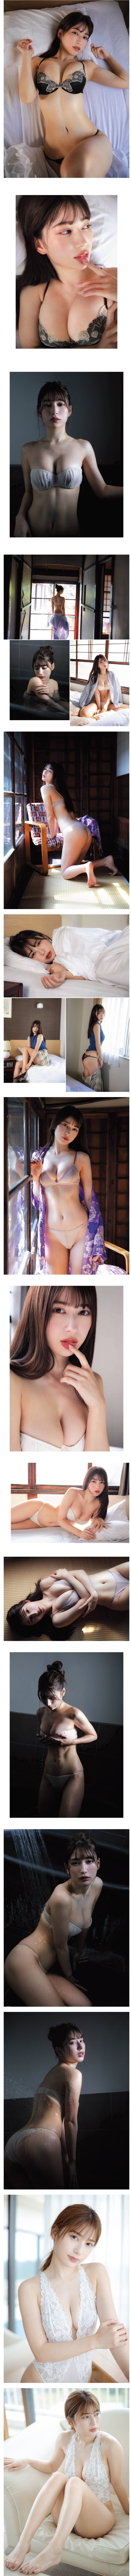 일본 그라비아 모델 유키히라 리사